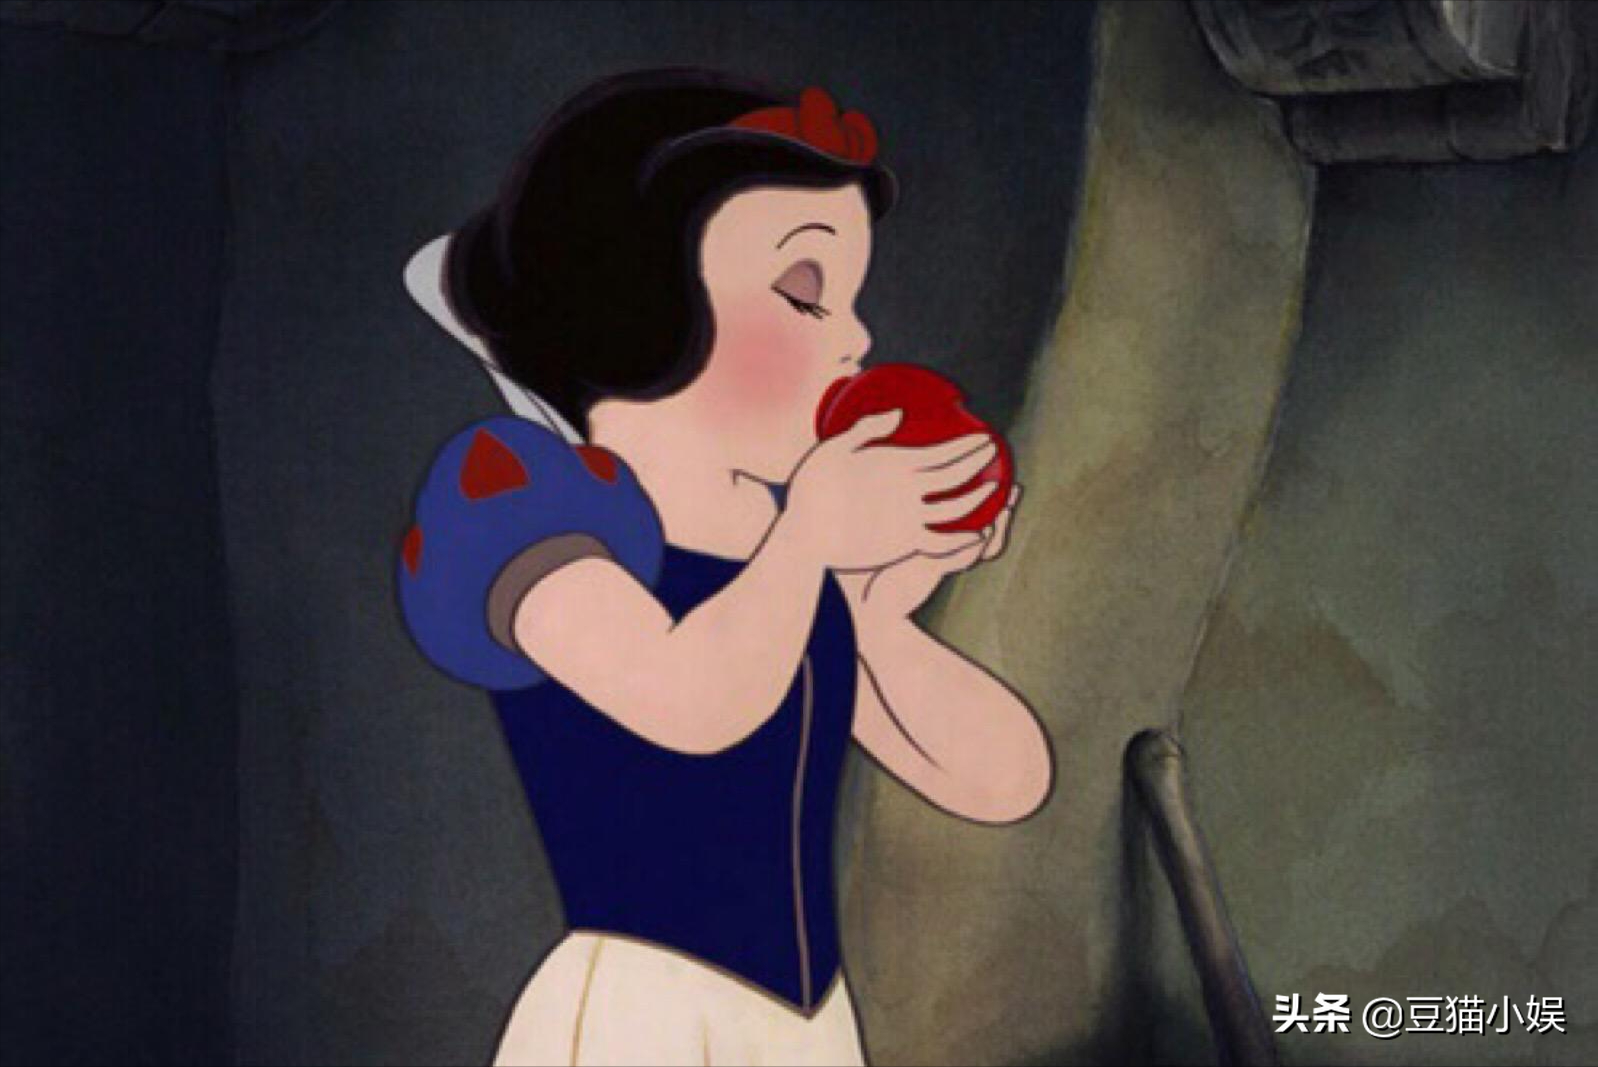 从5方面赏析迪斯尼动画电影《白雪公主》,其为何能被观众喜欢?